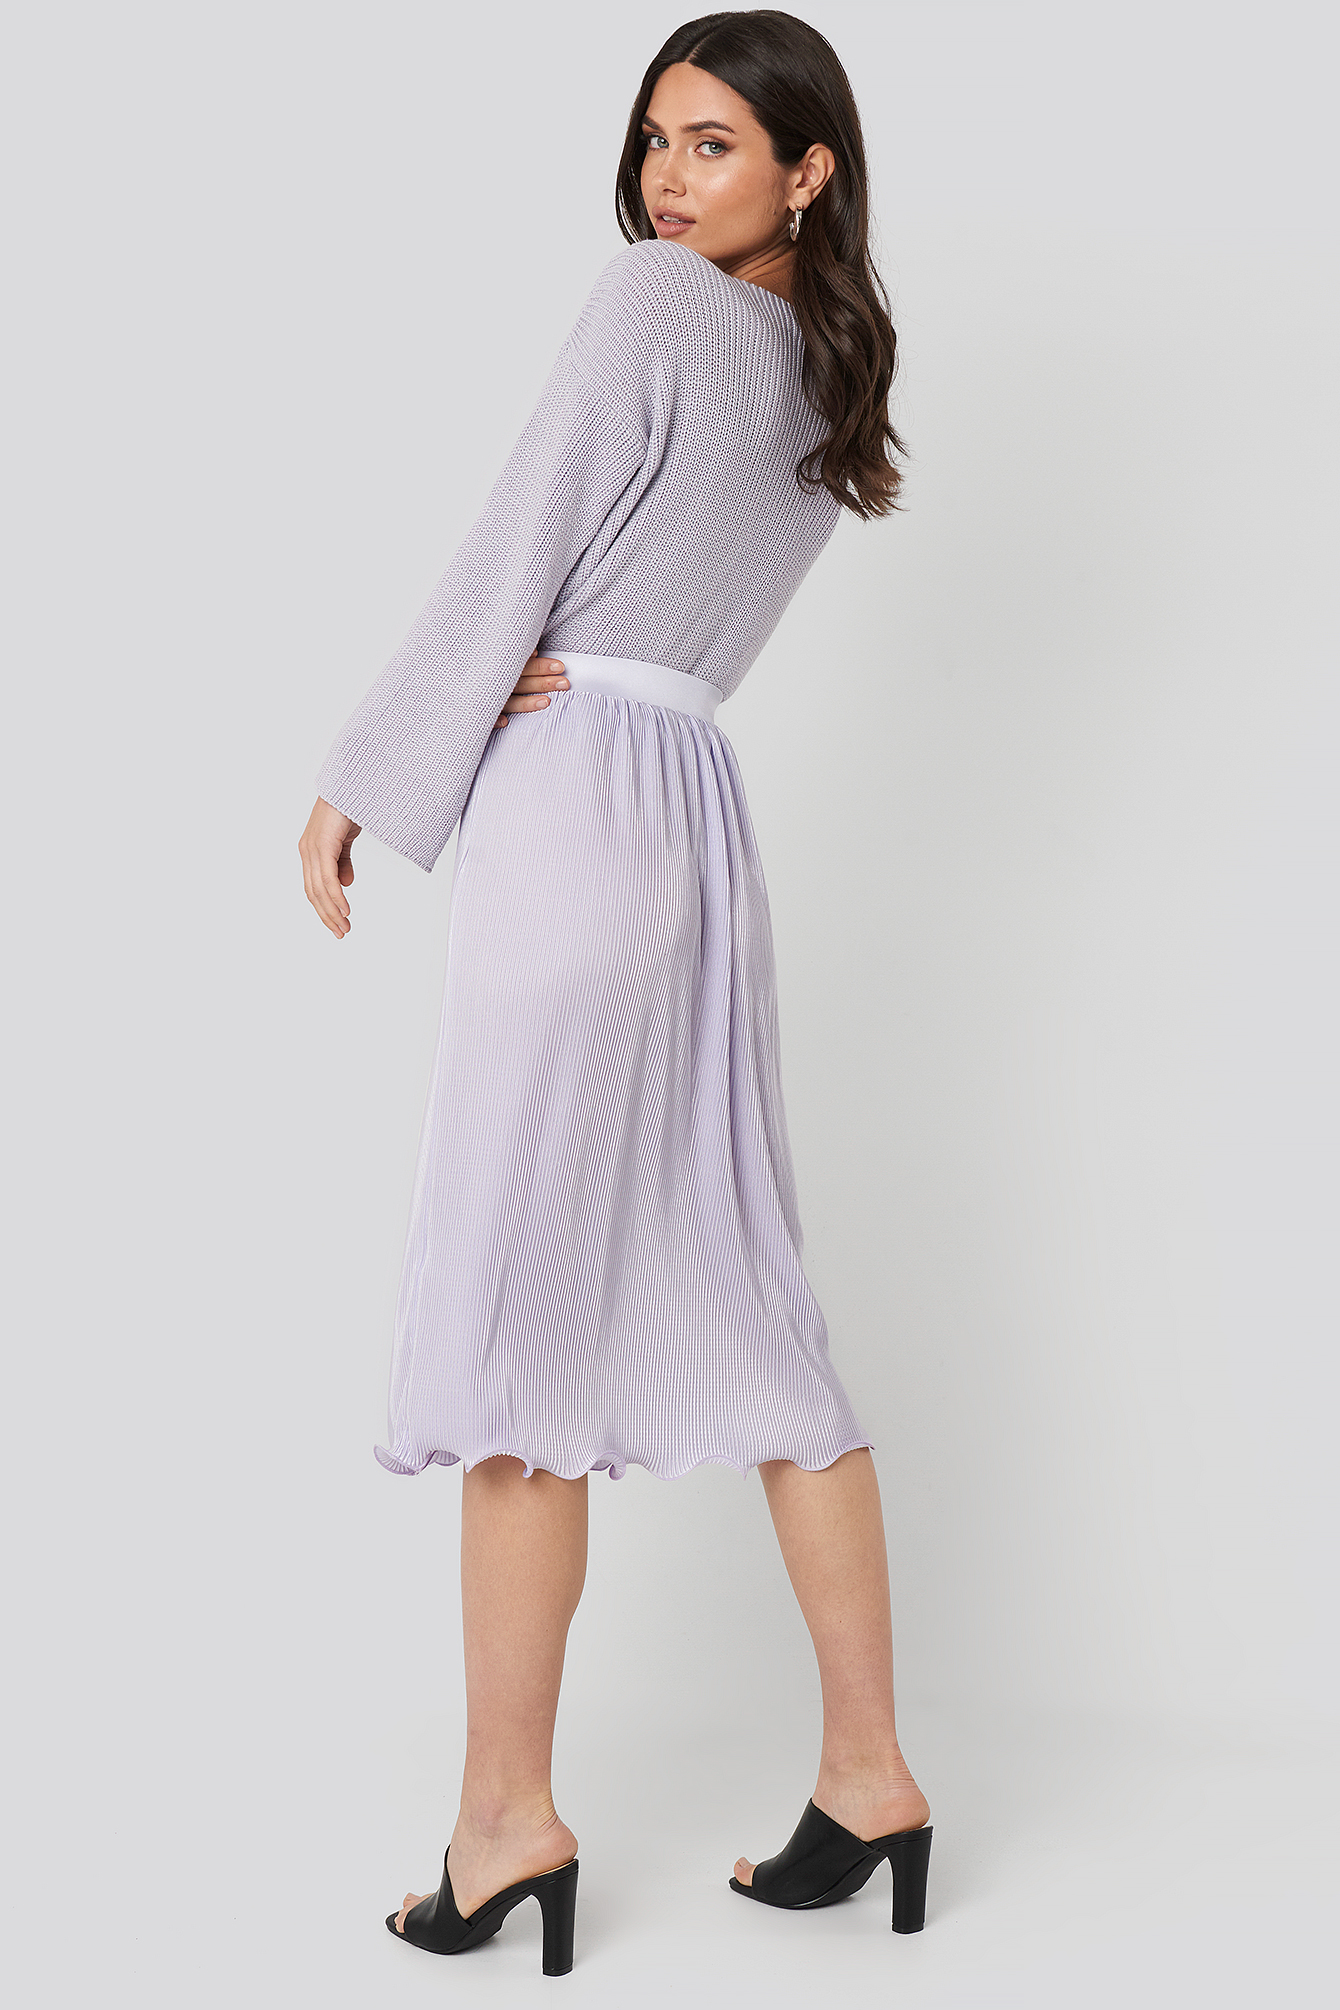 Light Purple Pleated Detailed Hem Skirt